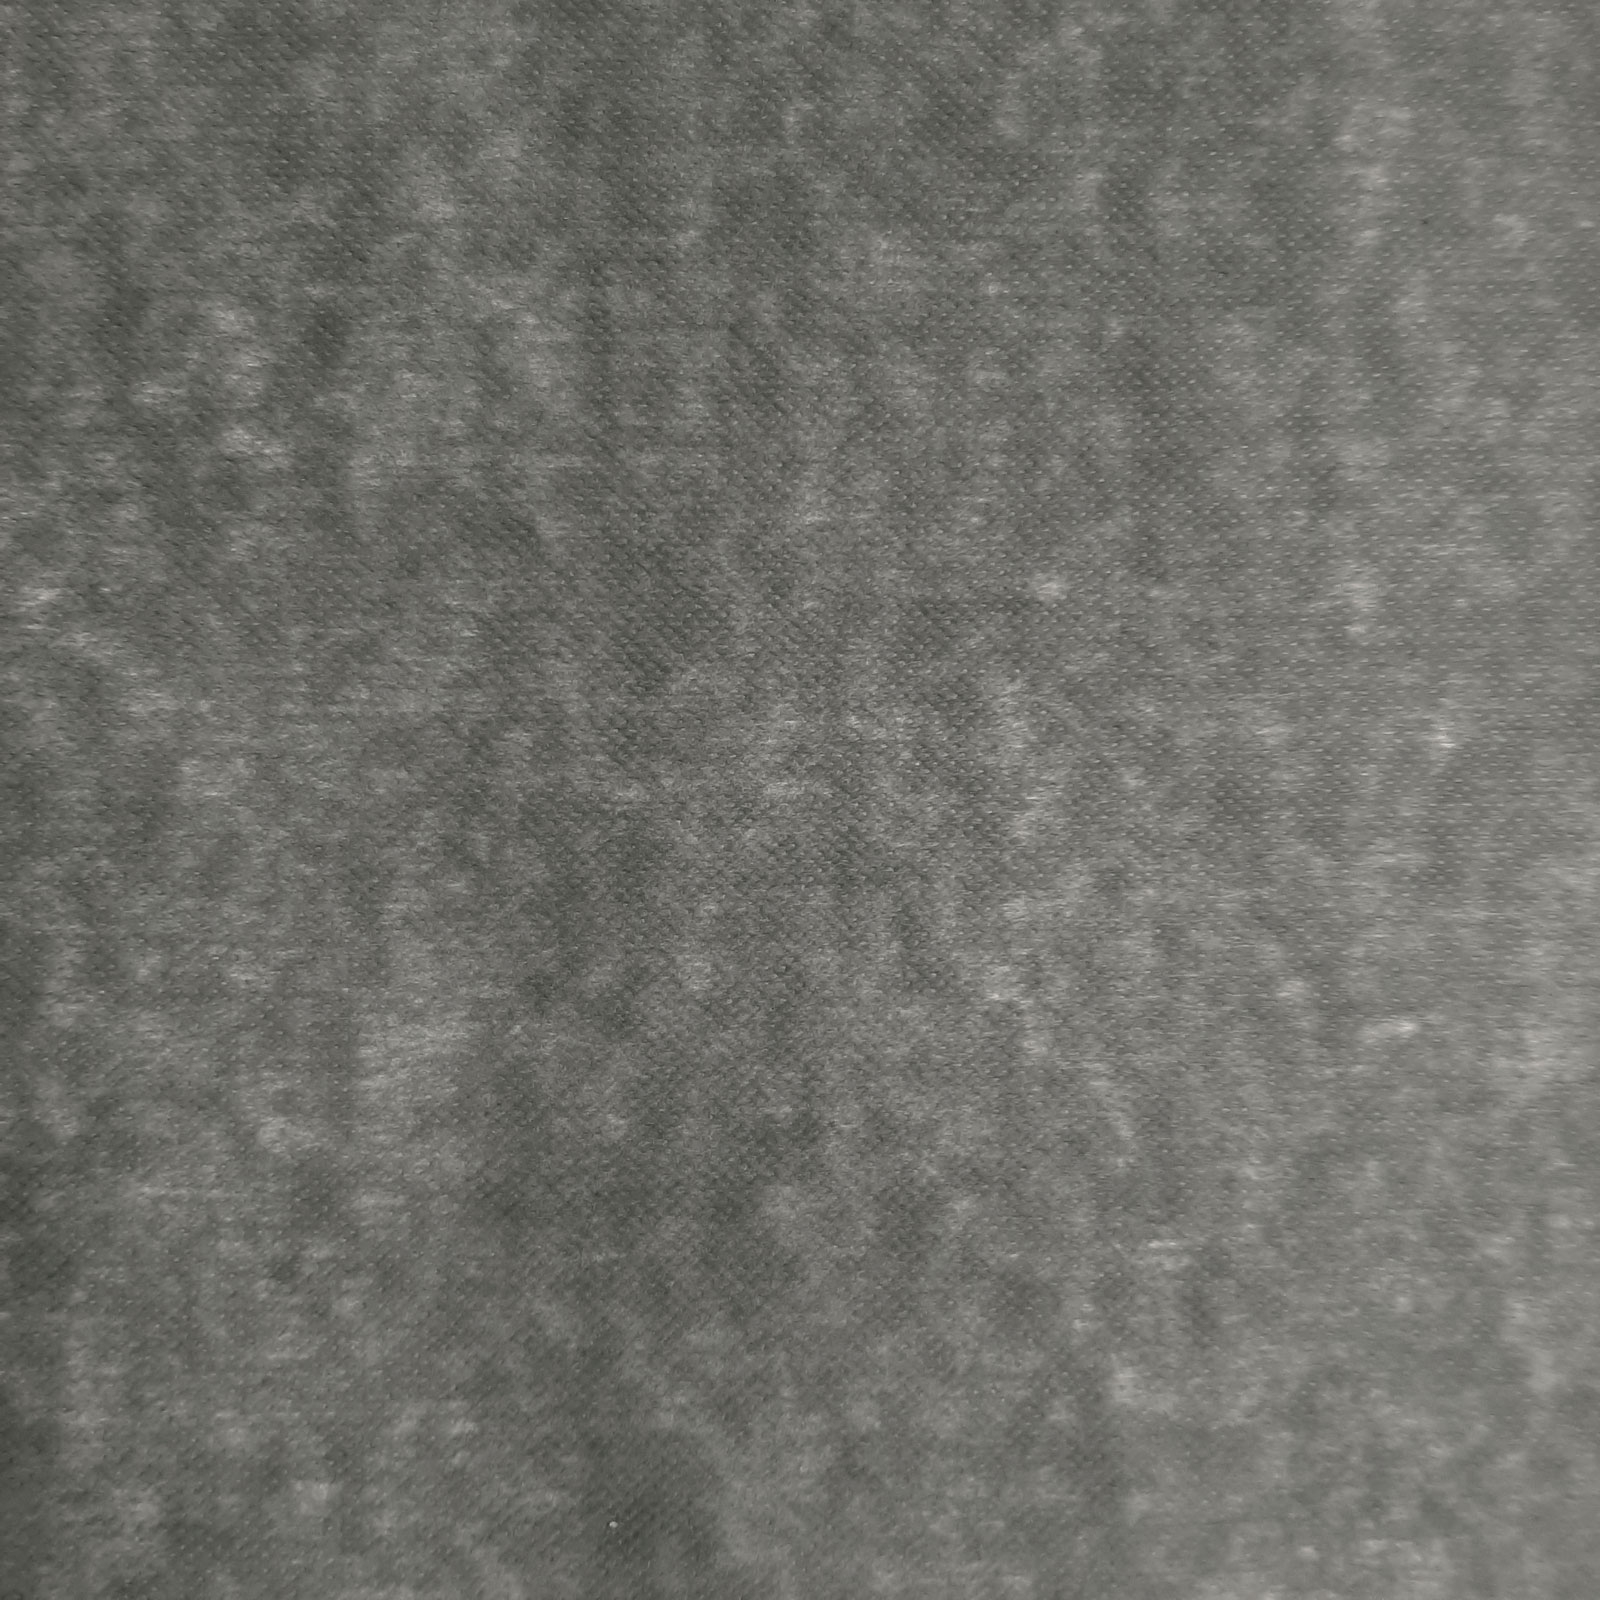 Beatrice - Lino polar planchado transversalmente elástico - Gris oscuro